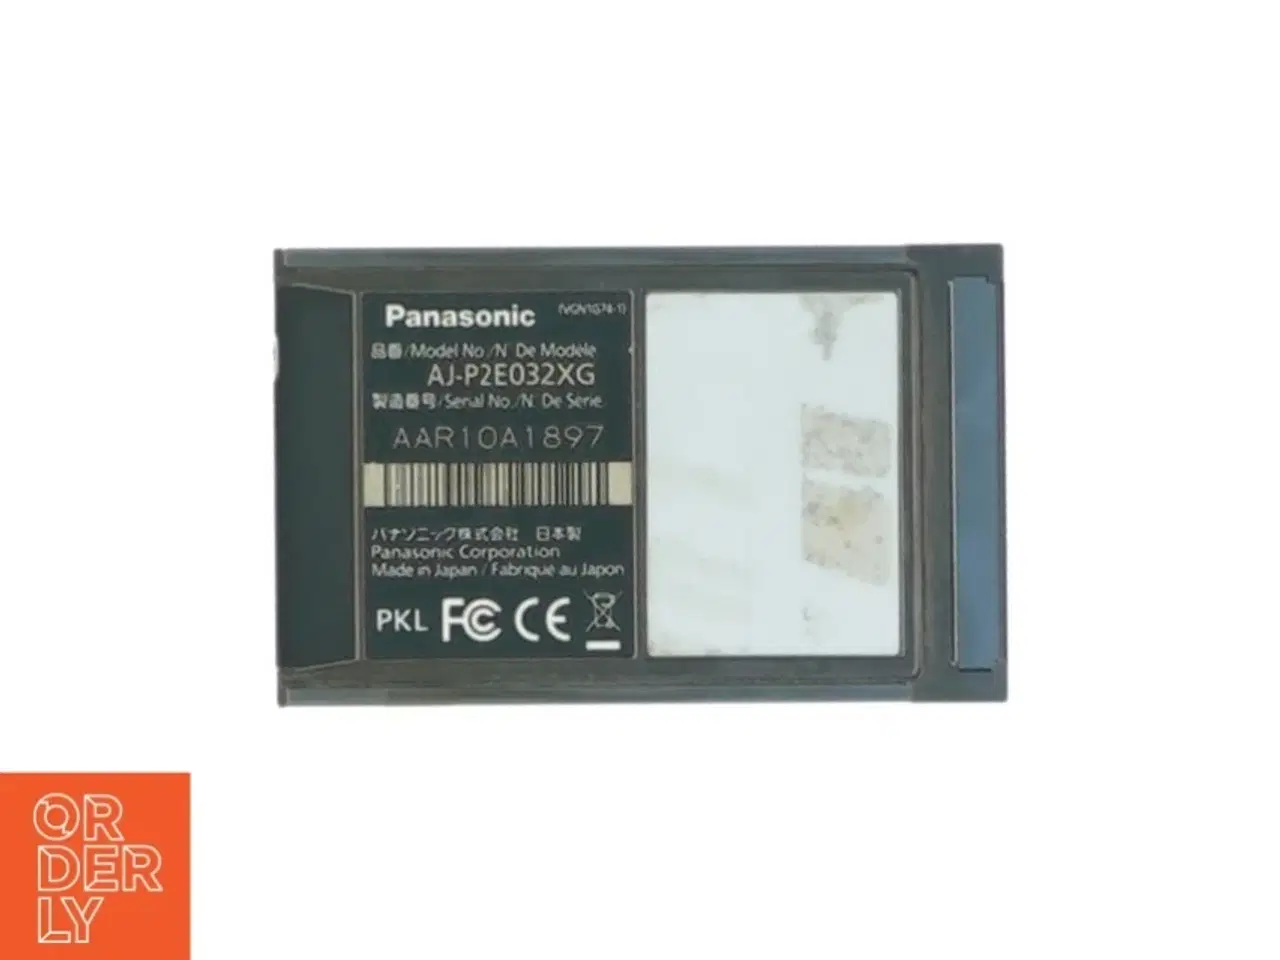 Billede 2 - Panasonic P2 kort E serie 32 gigabyte fra Panasonic (str. 9 x 5 cm )